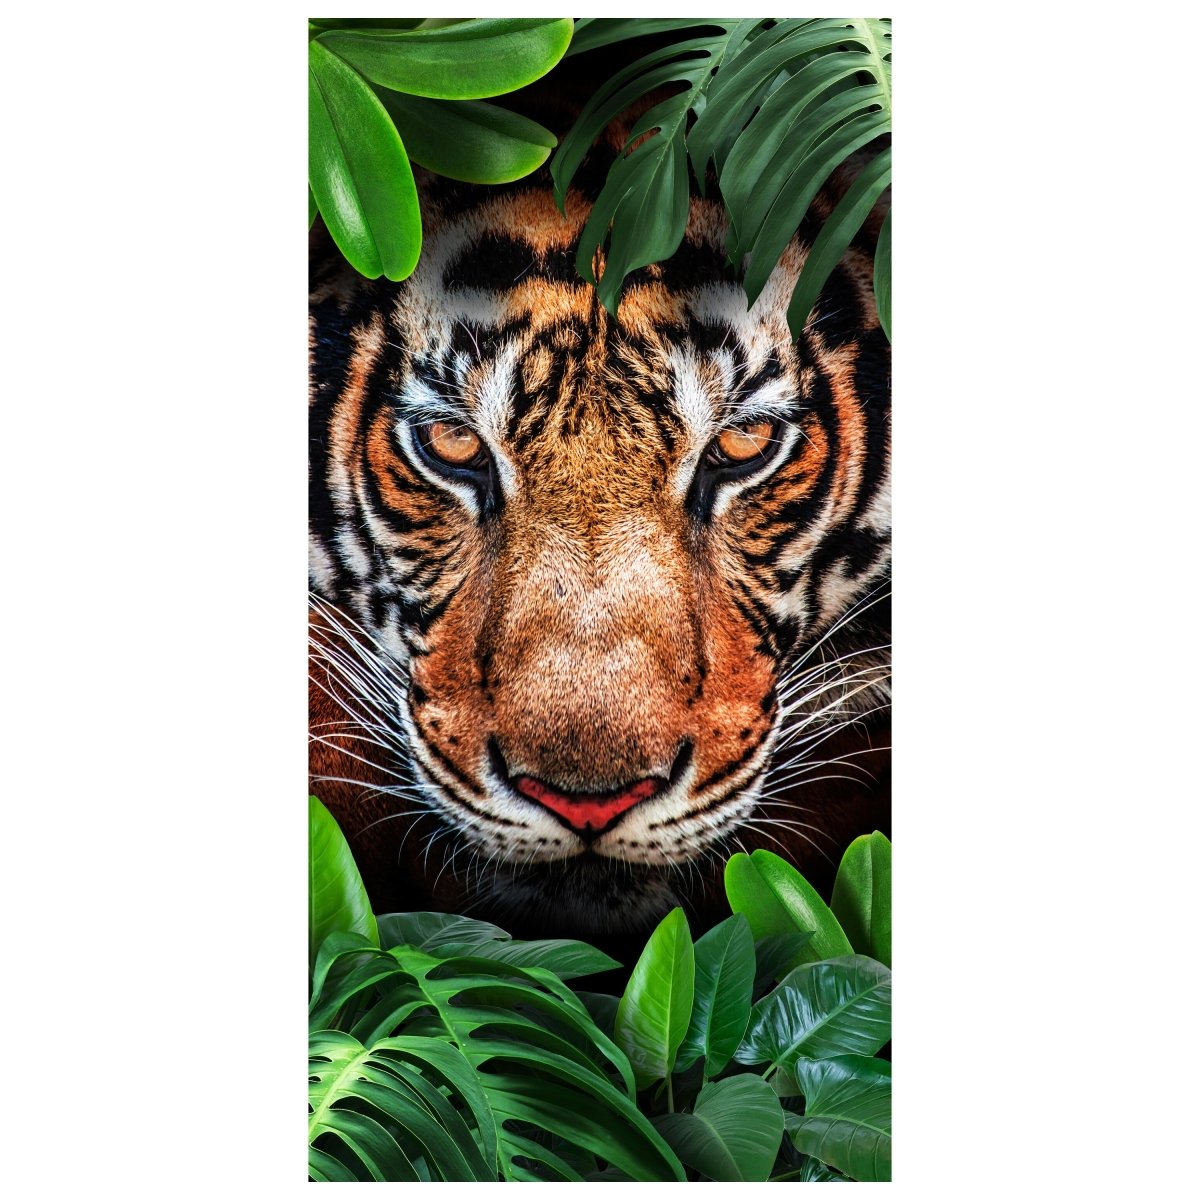 Türtapete Tiger Gesicht, Dschungel, Tier, Katze M1340 - Bild 2